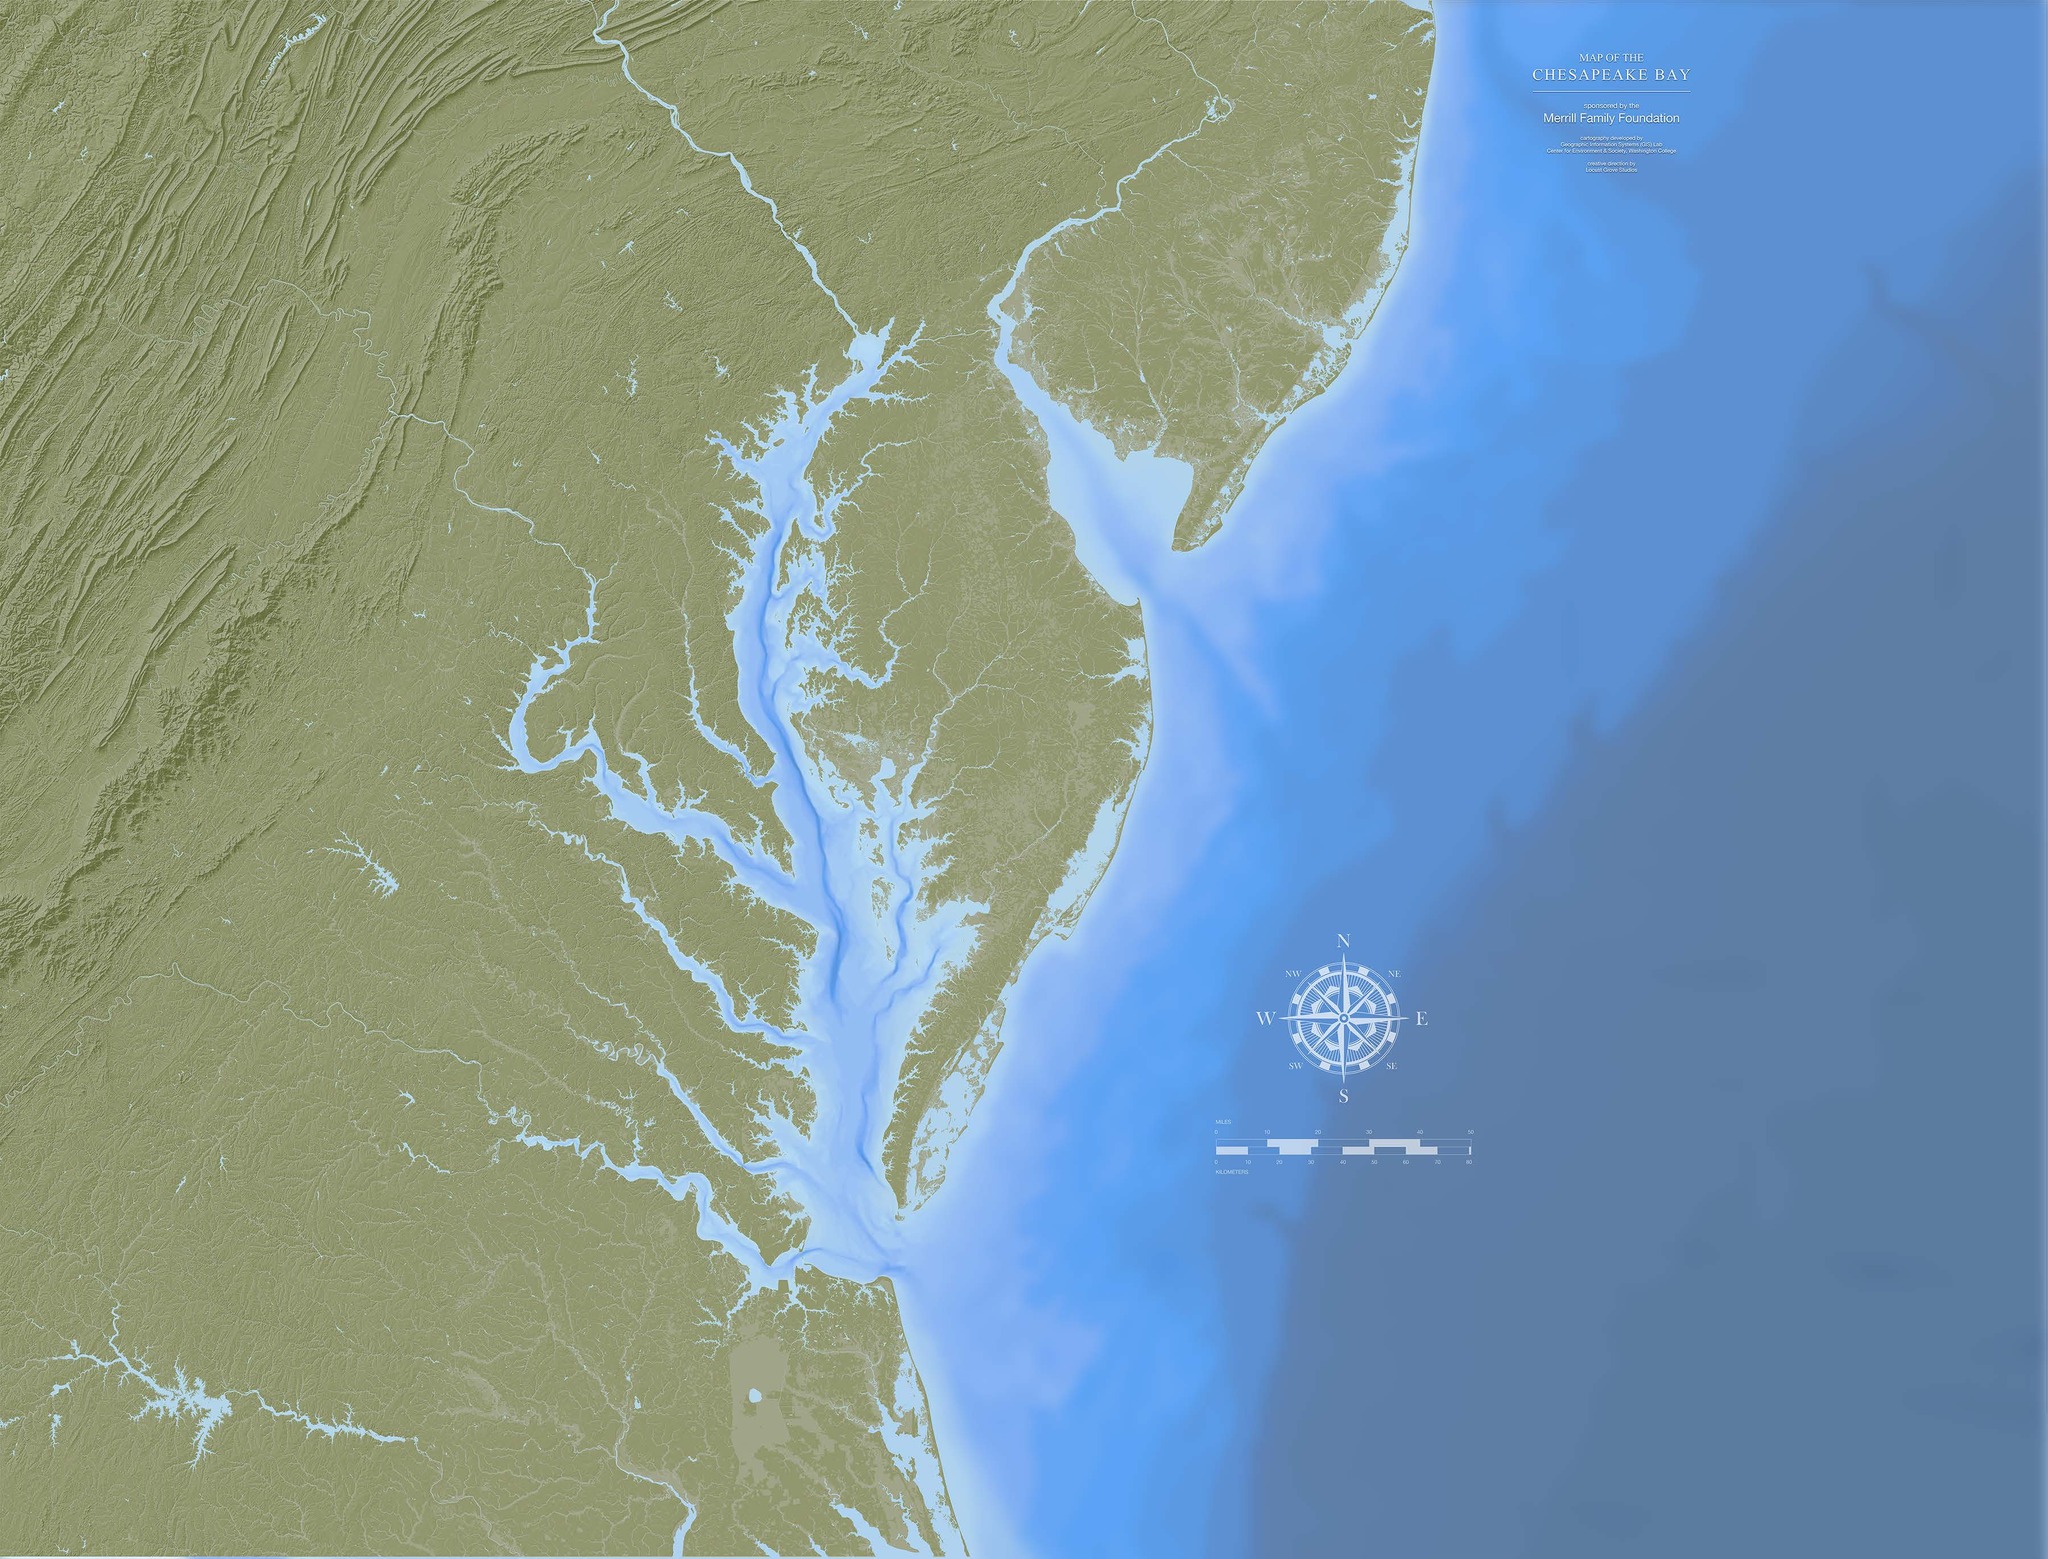 Map of Chesapeake Bay